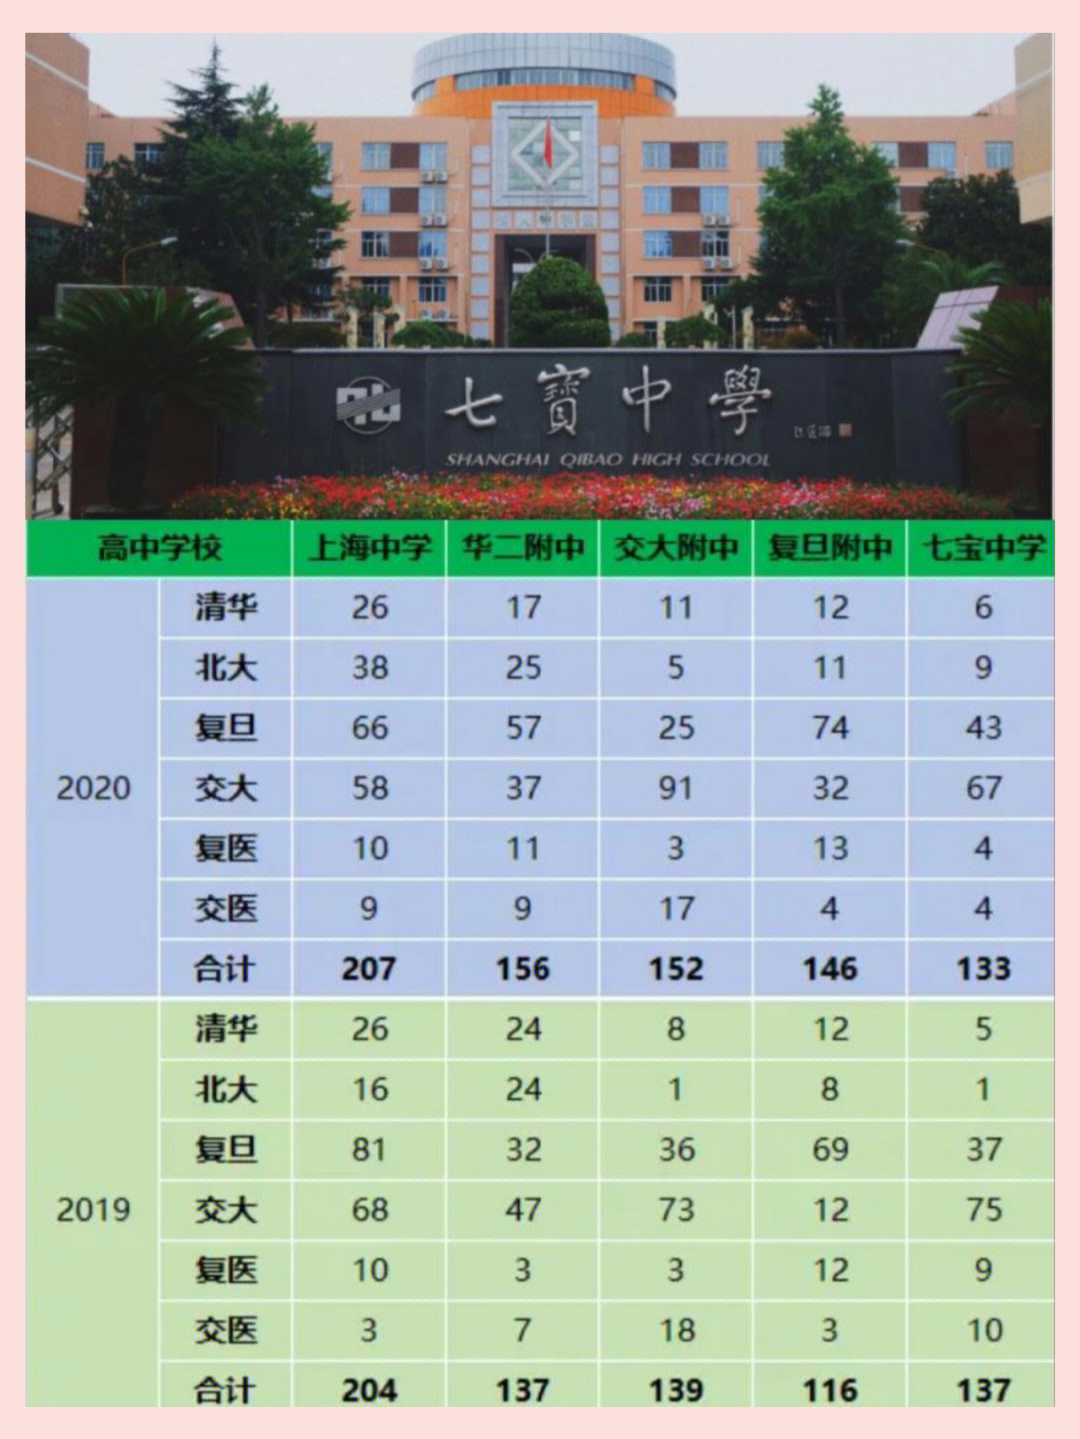 通过近几年北清复交录取数据,其实就能看出:七宝中学已经彻底挤进上海